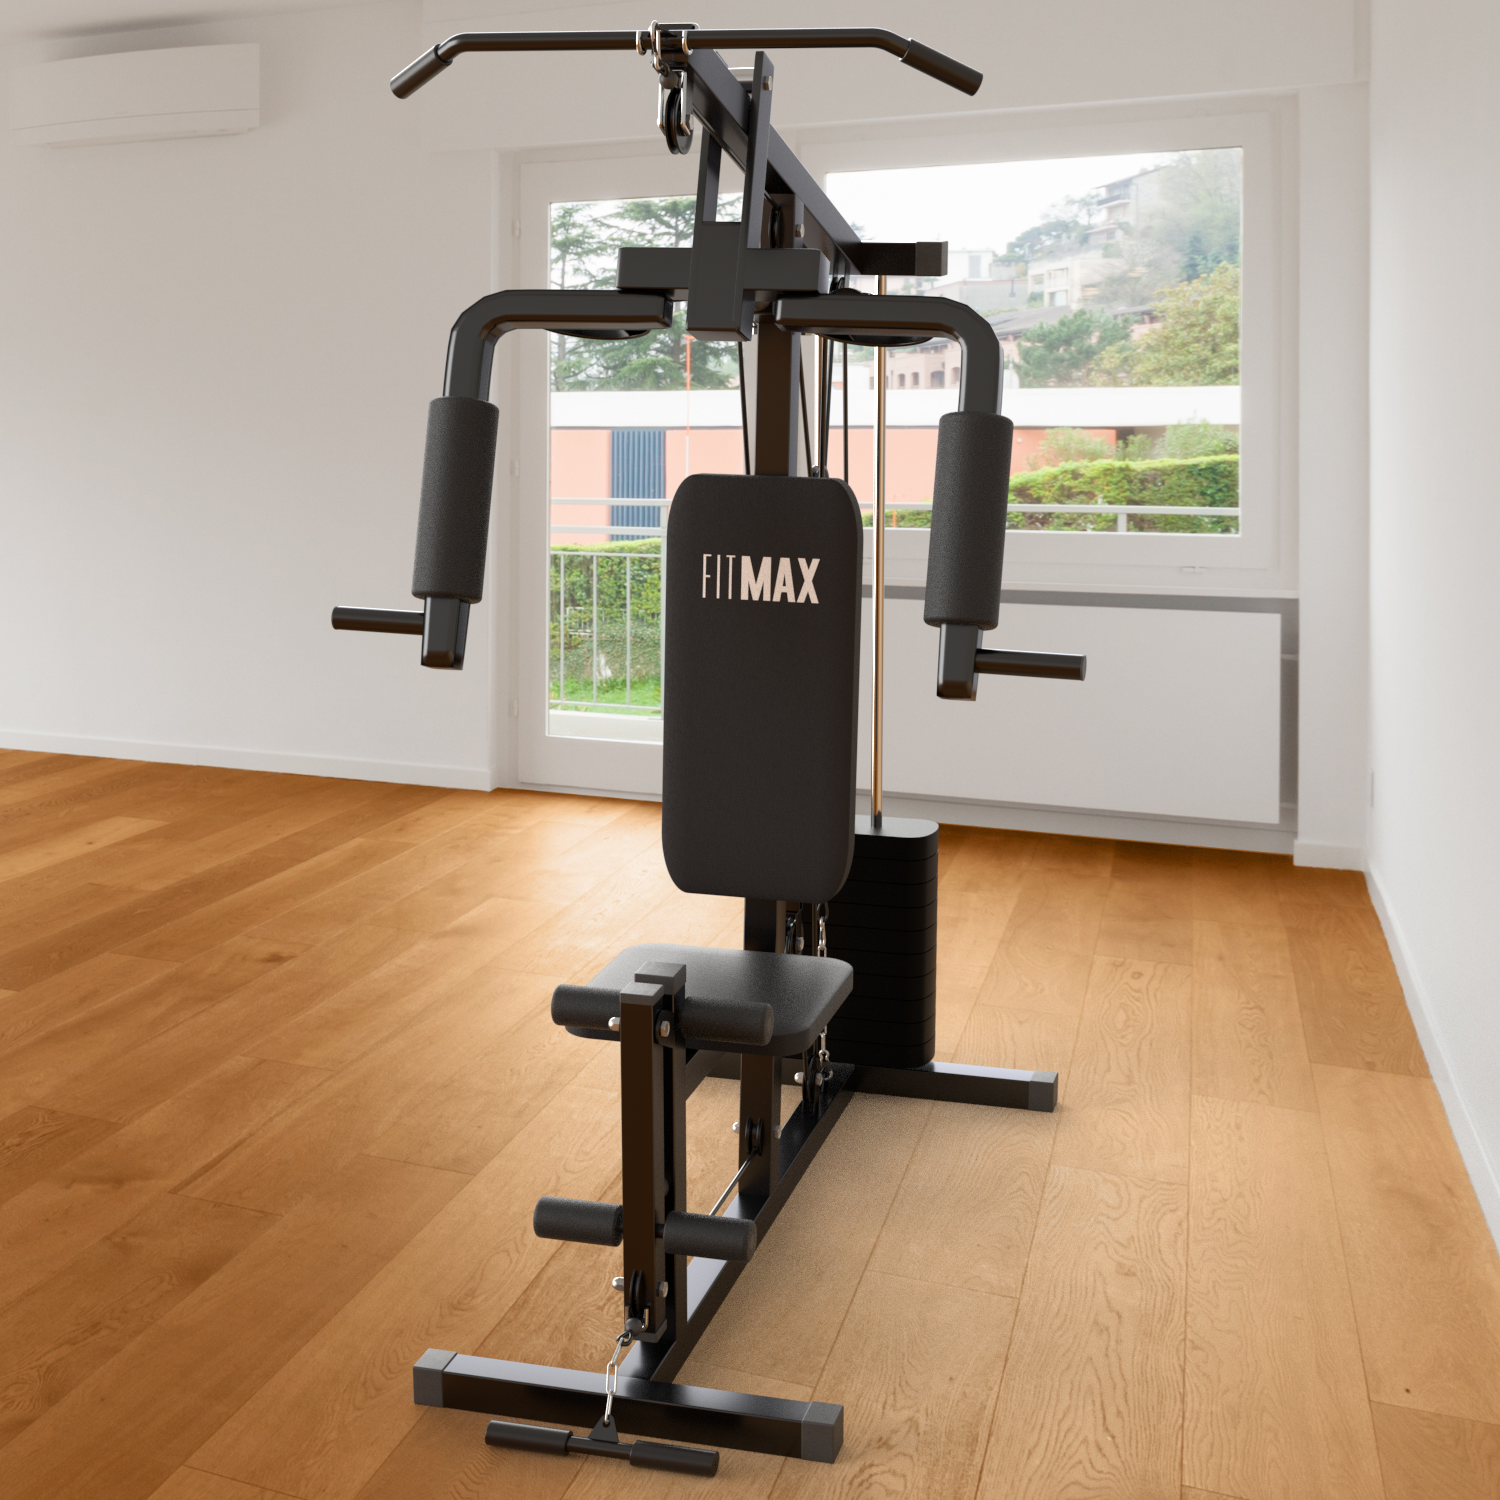 Máquinas de ejercicios: arma tu propio gimnasio en casa - Somos Falabella